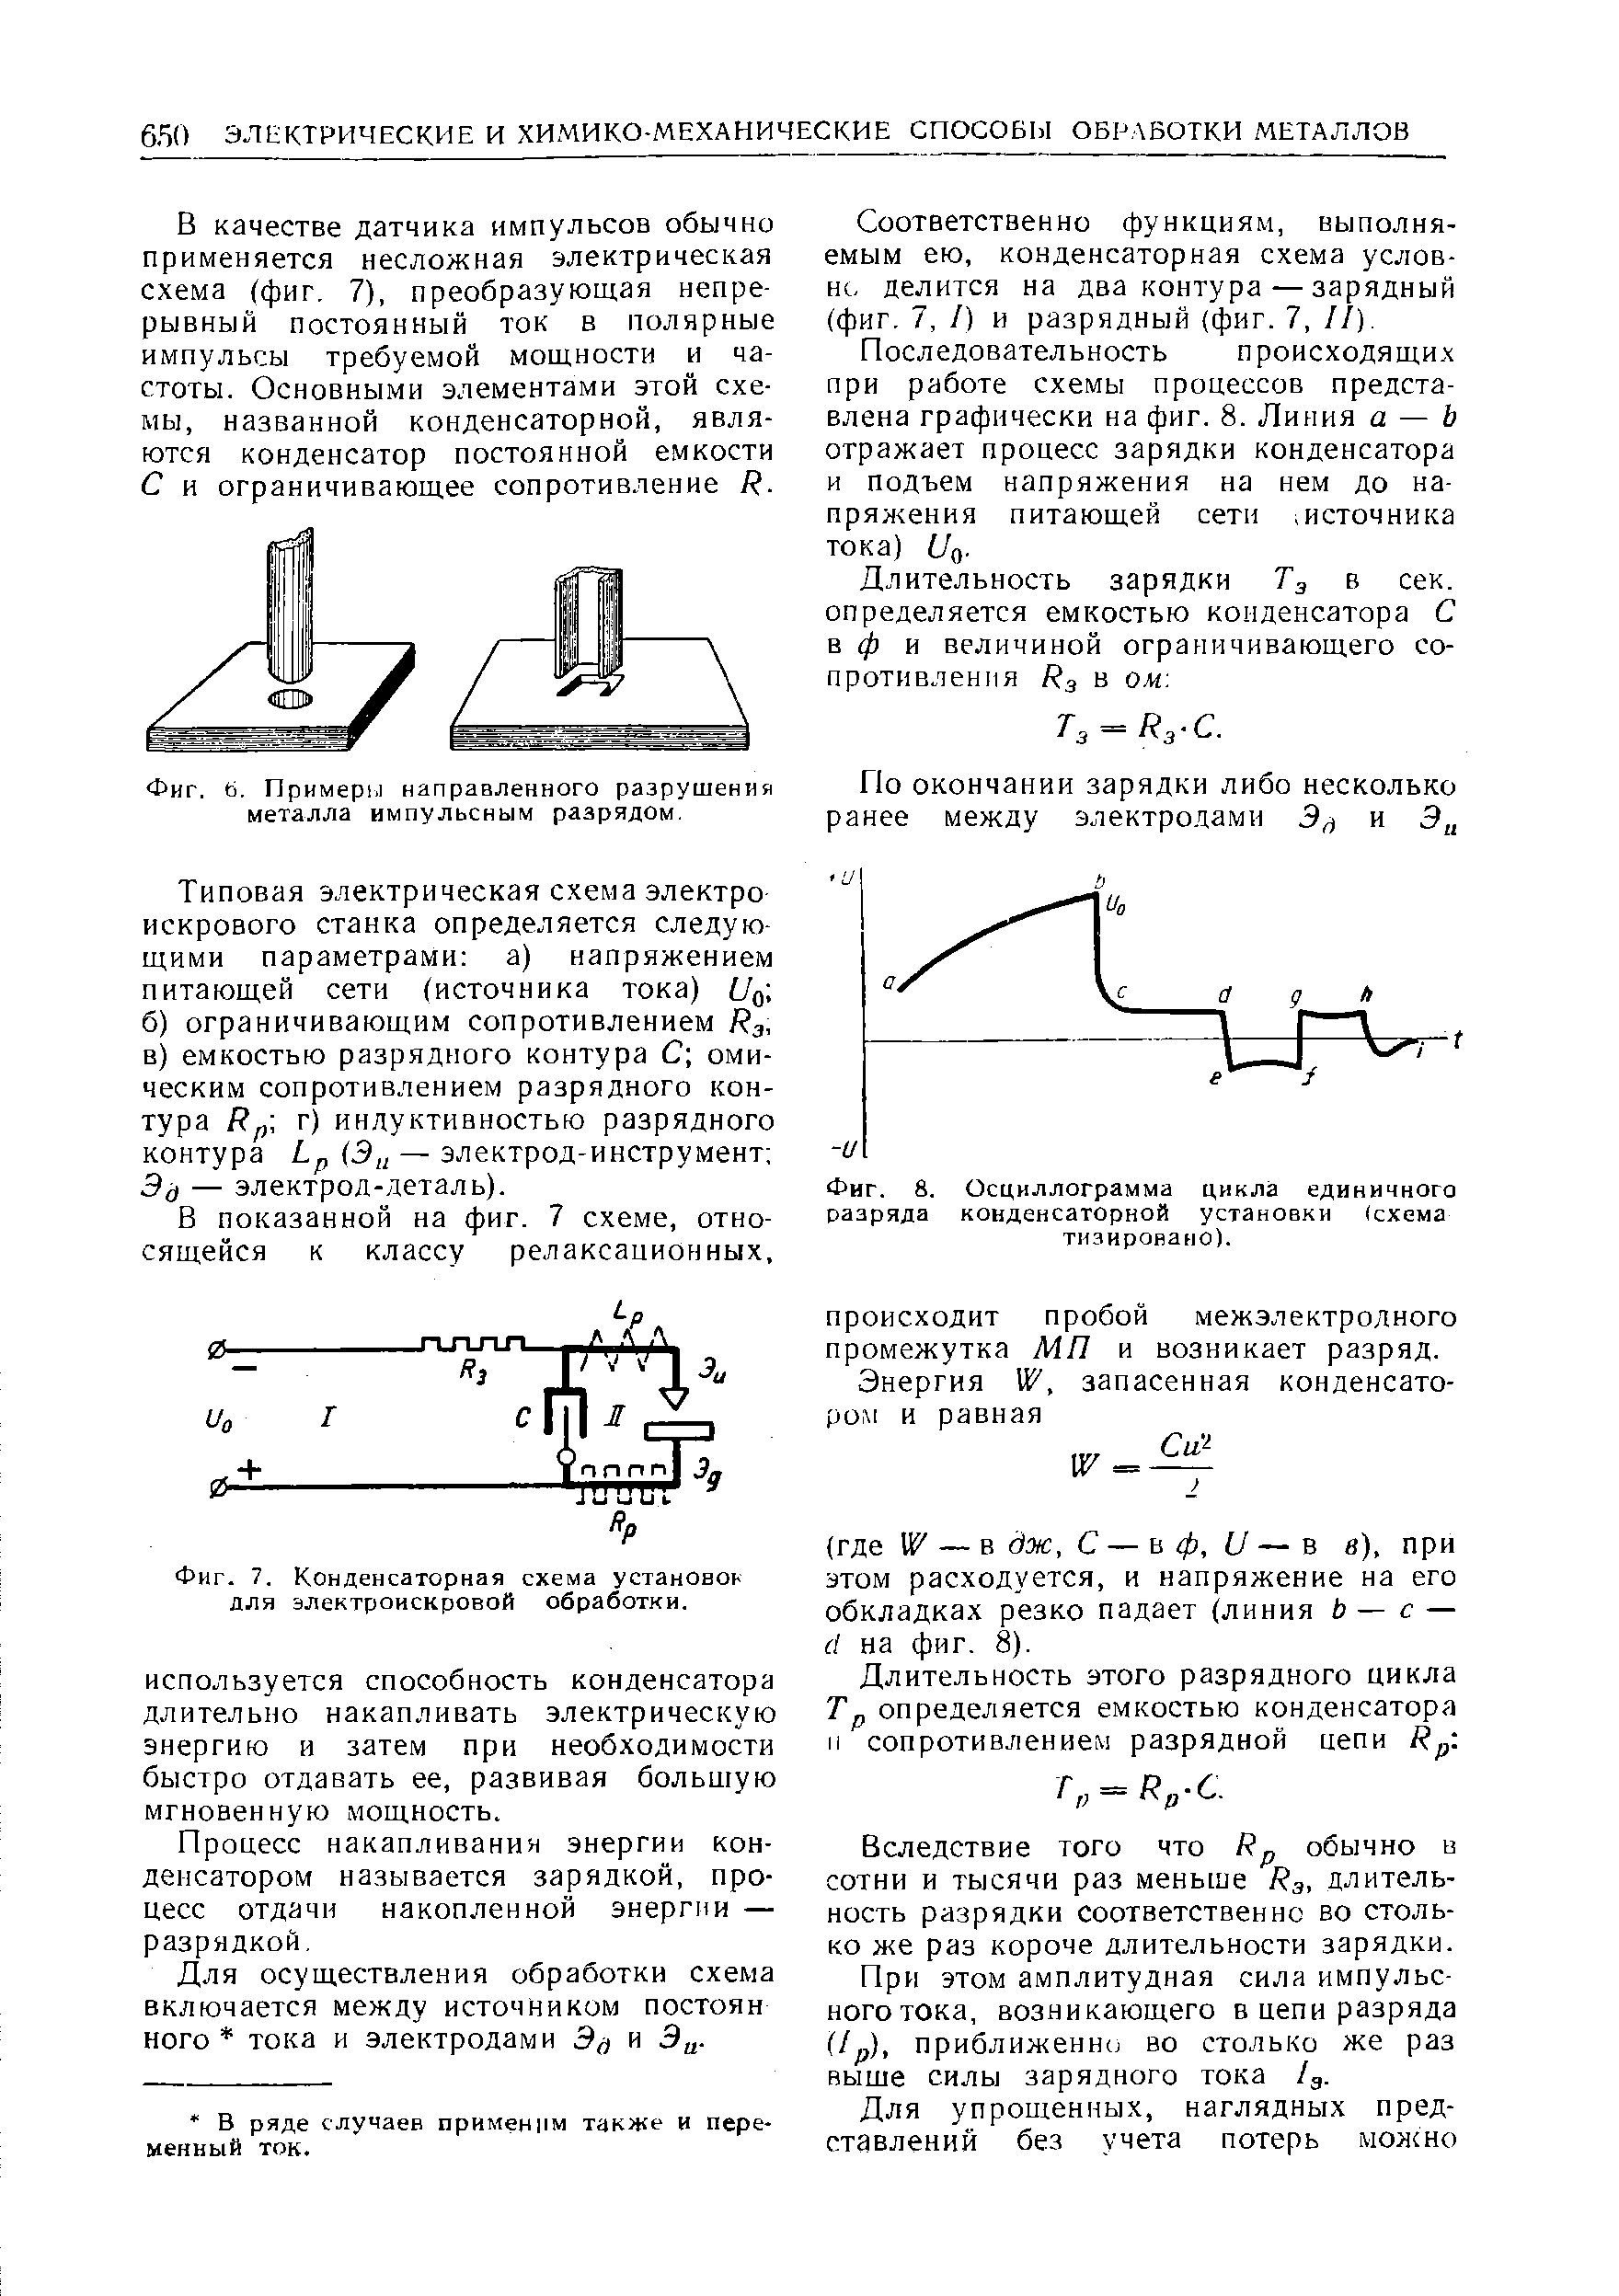 Фиг. 8. Осциллограмма цикла единичного разряда конденсаторной установки (схема тизировано).
